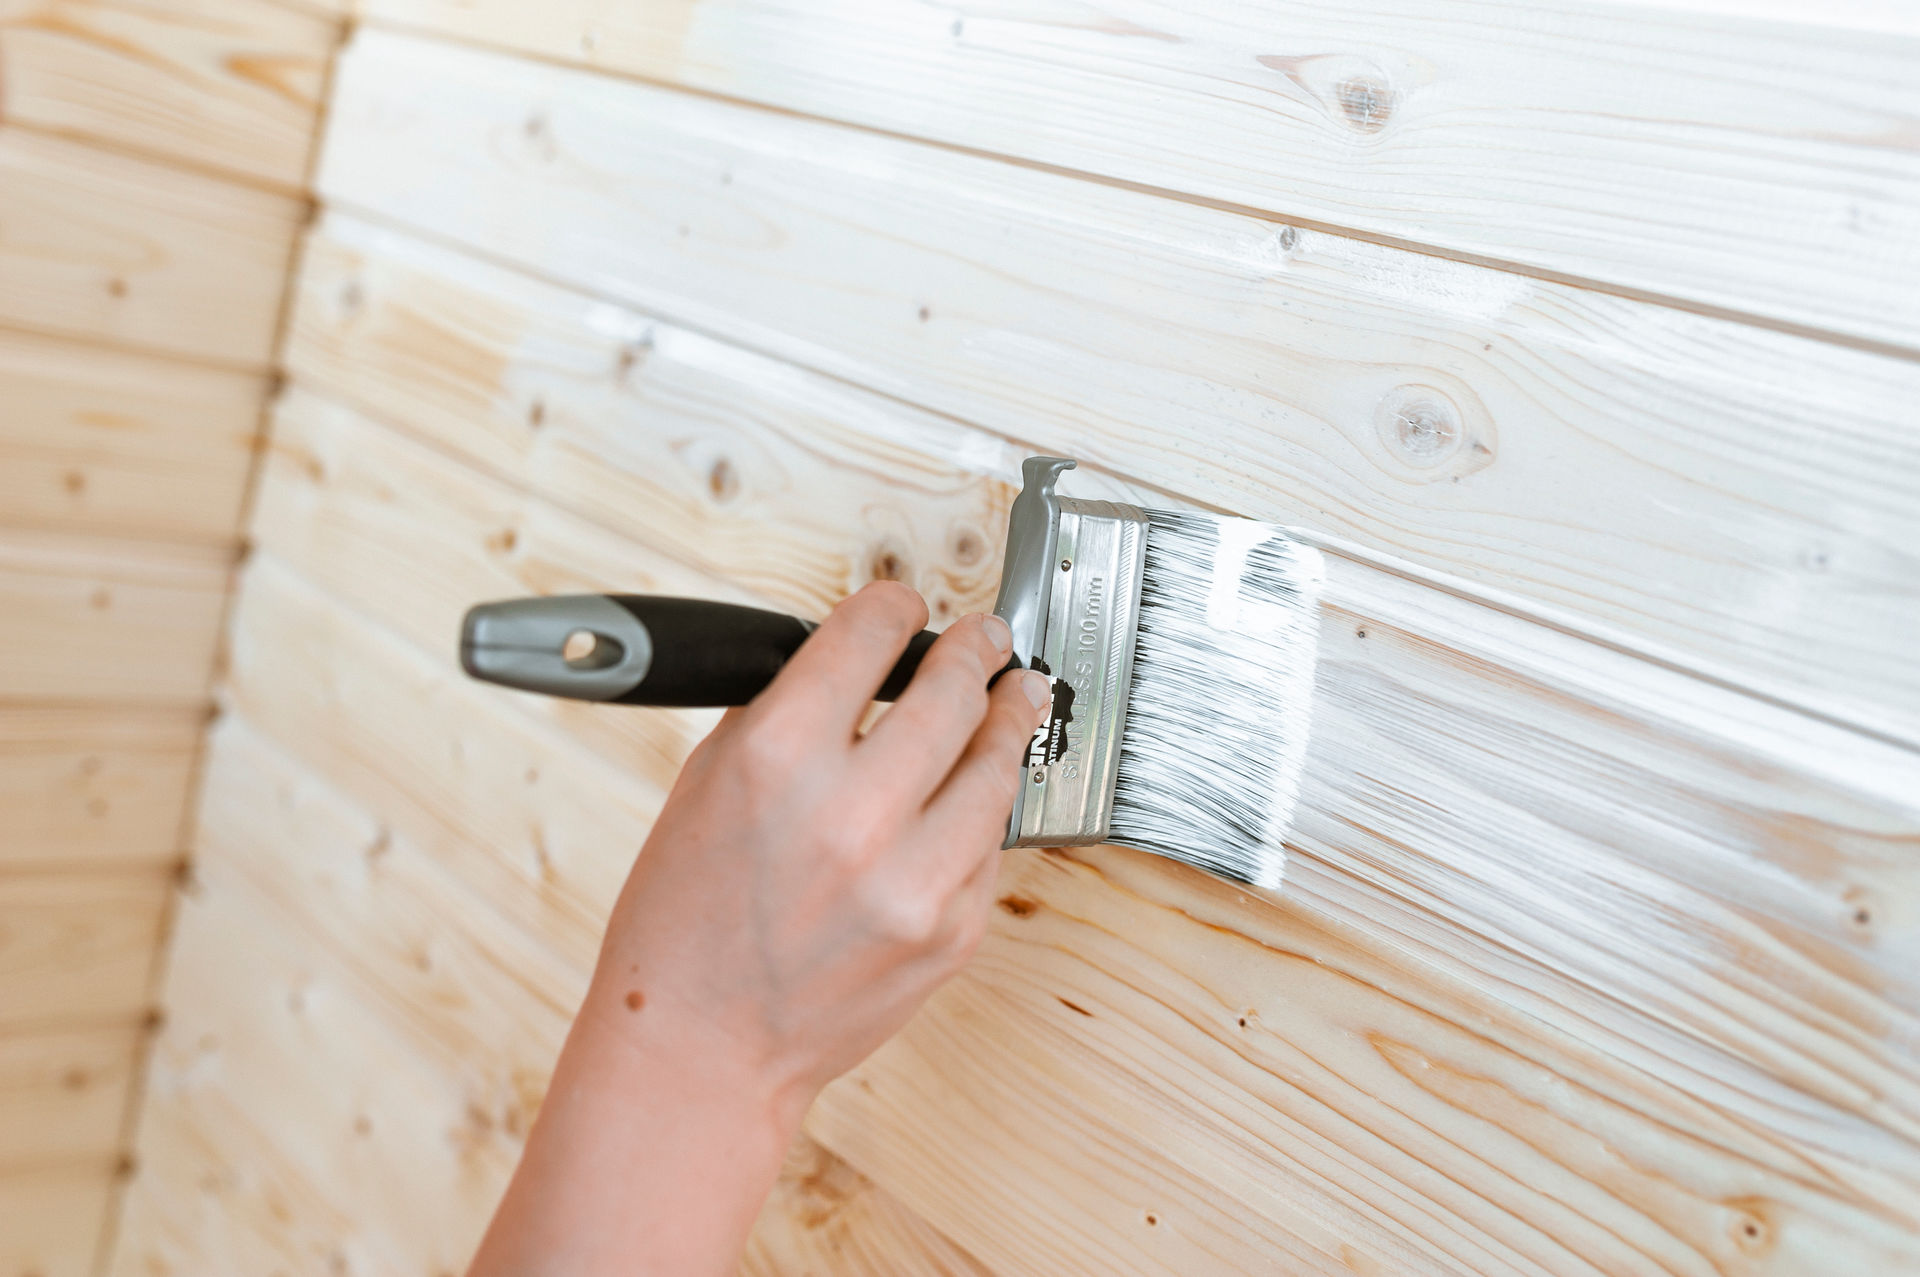 Pannello di legno a parete - Controllare le migliori idee su come dipingere i pannelli di legno